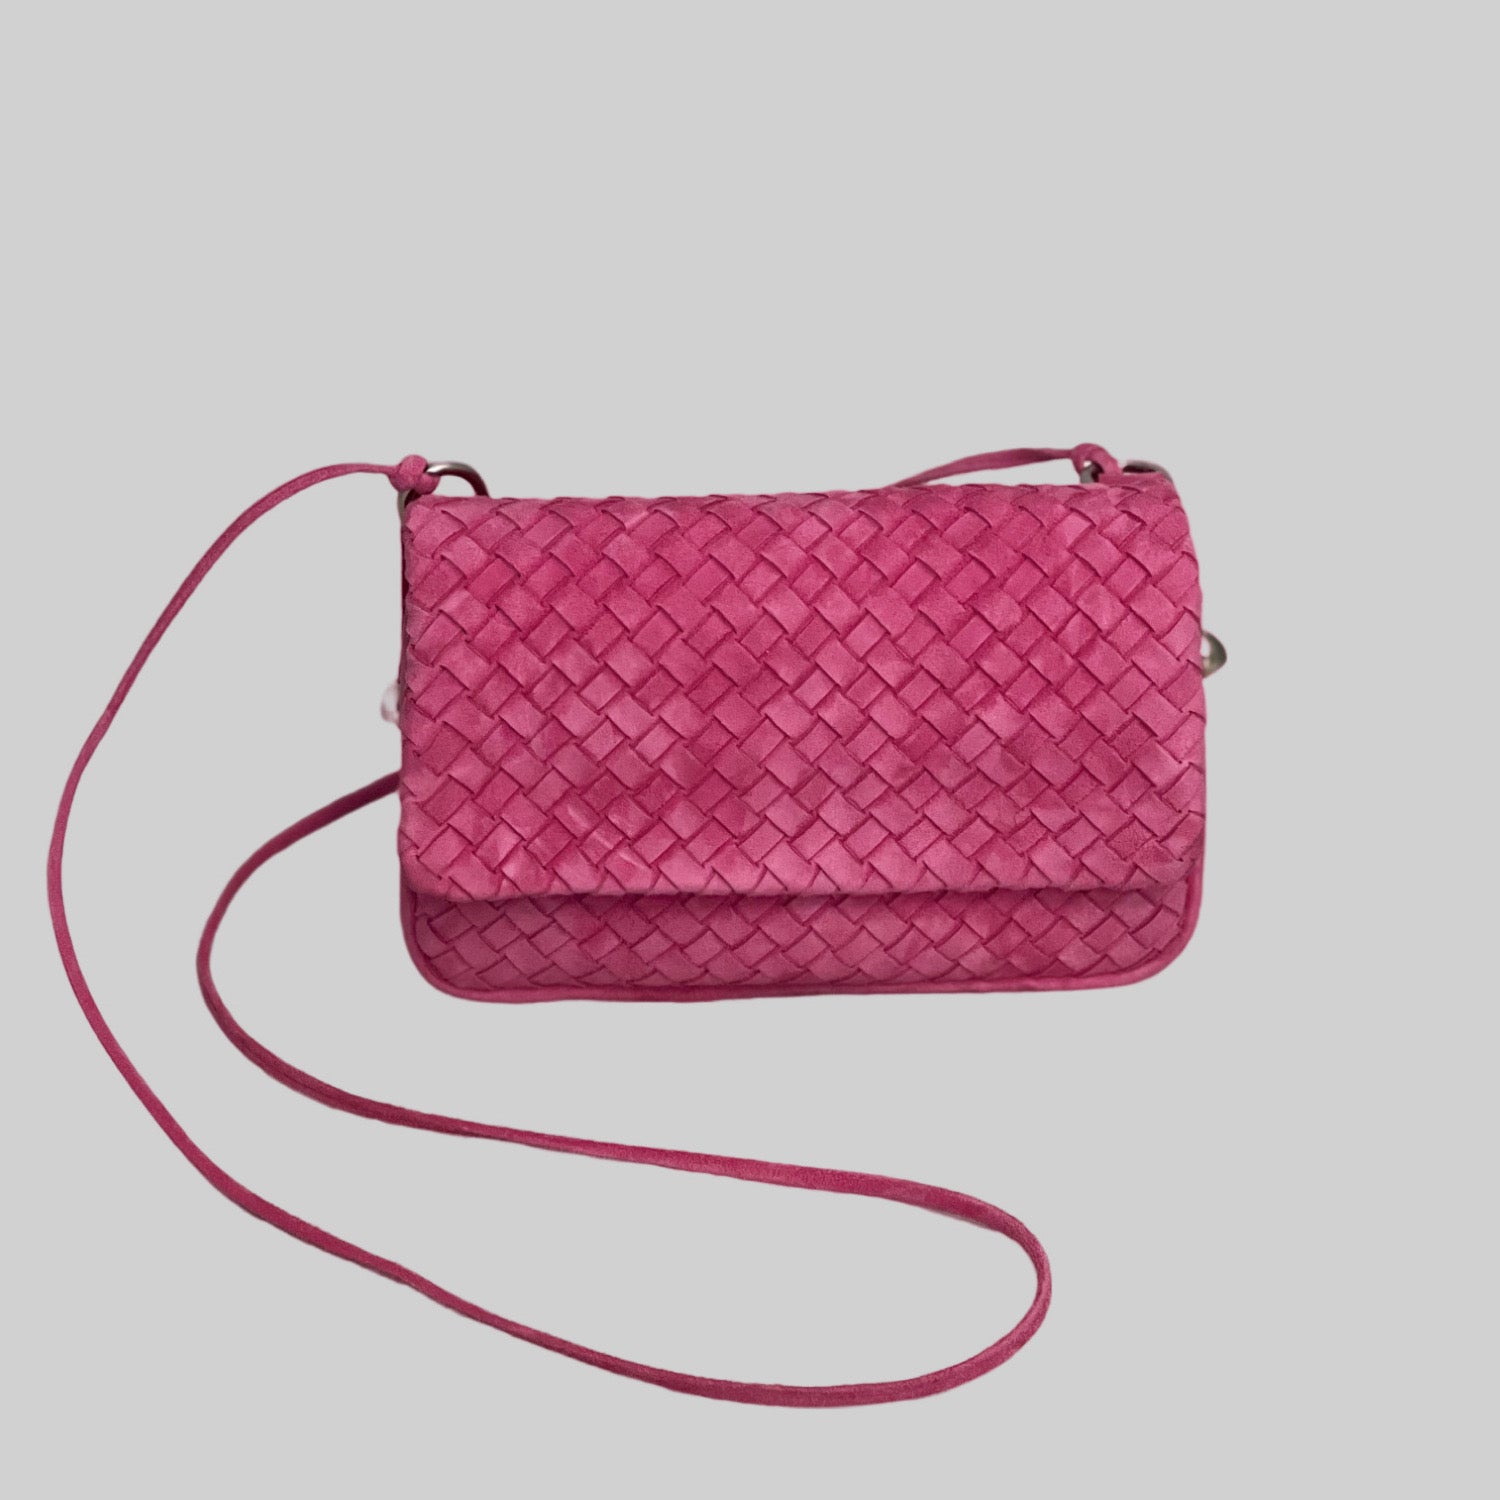 Ribichini Undercover i rosa: Praktisk og stilig flettet semsket skinnveske. Elegante sølvdetaljer gir luksuriøs touch. Trendy og organisert.